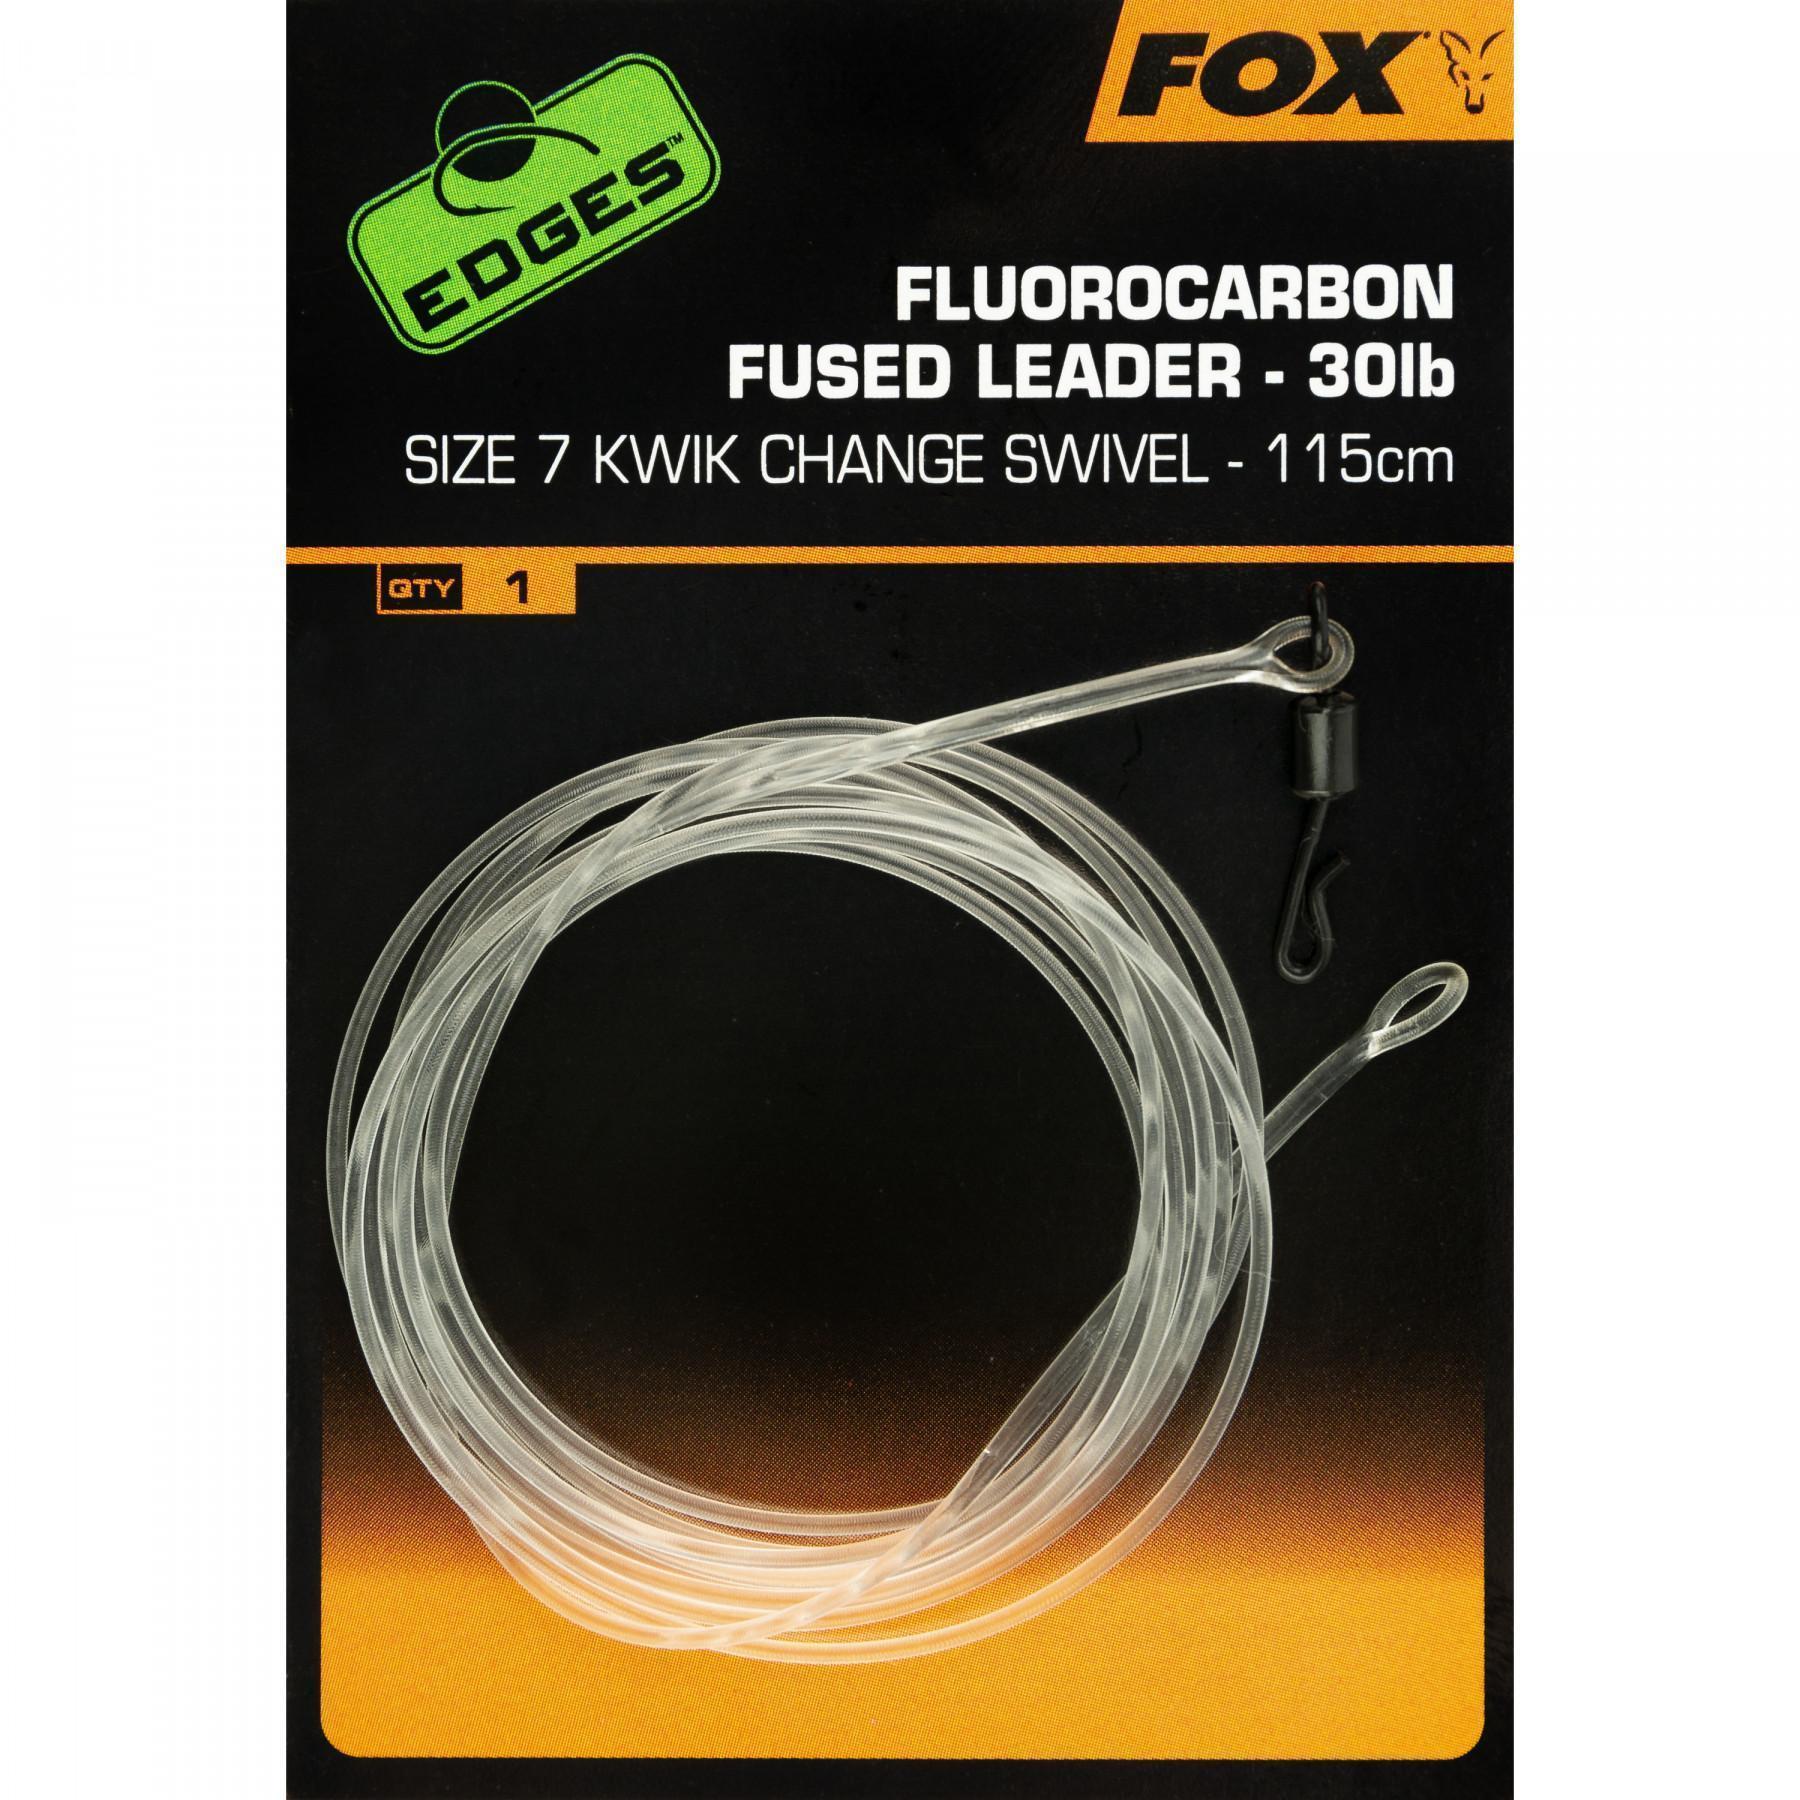 Fluorocarbon wire Fox Fused Leaders Kwik Change Edges size 7